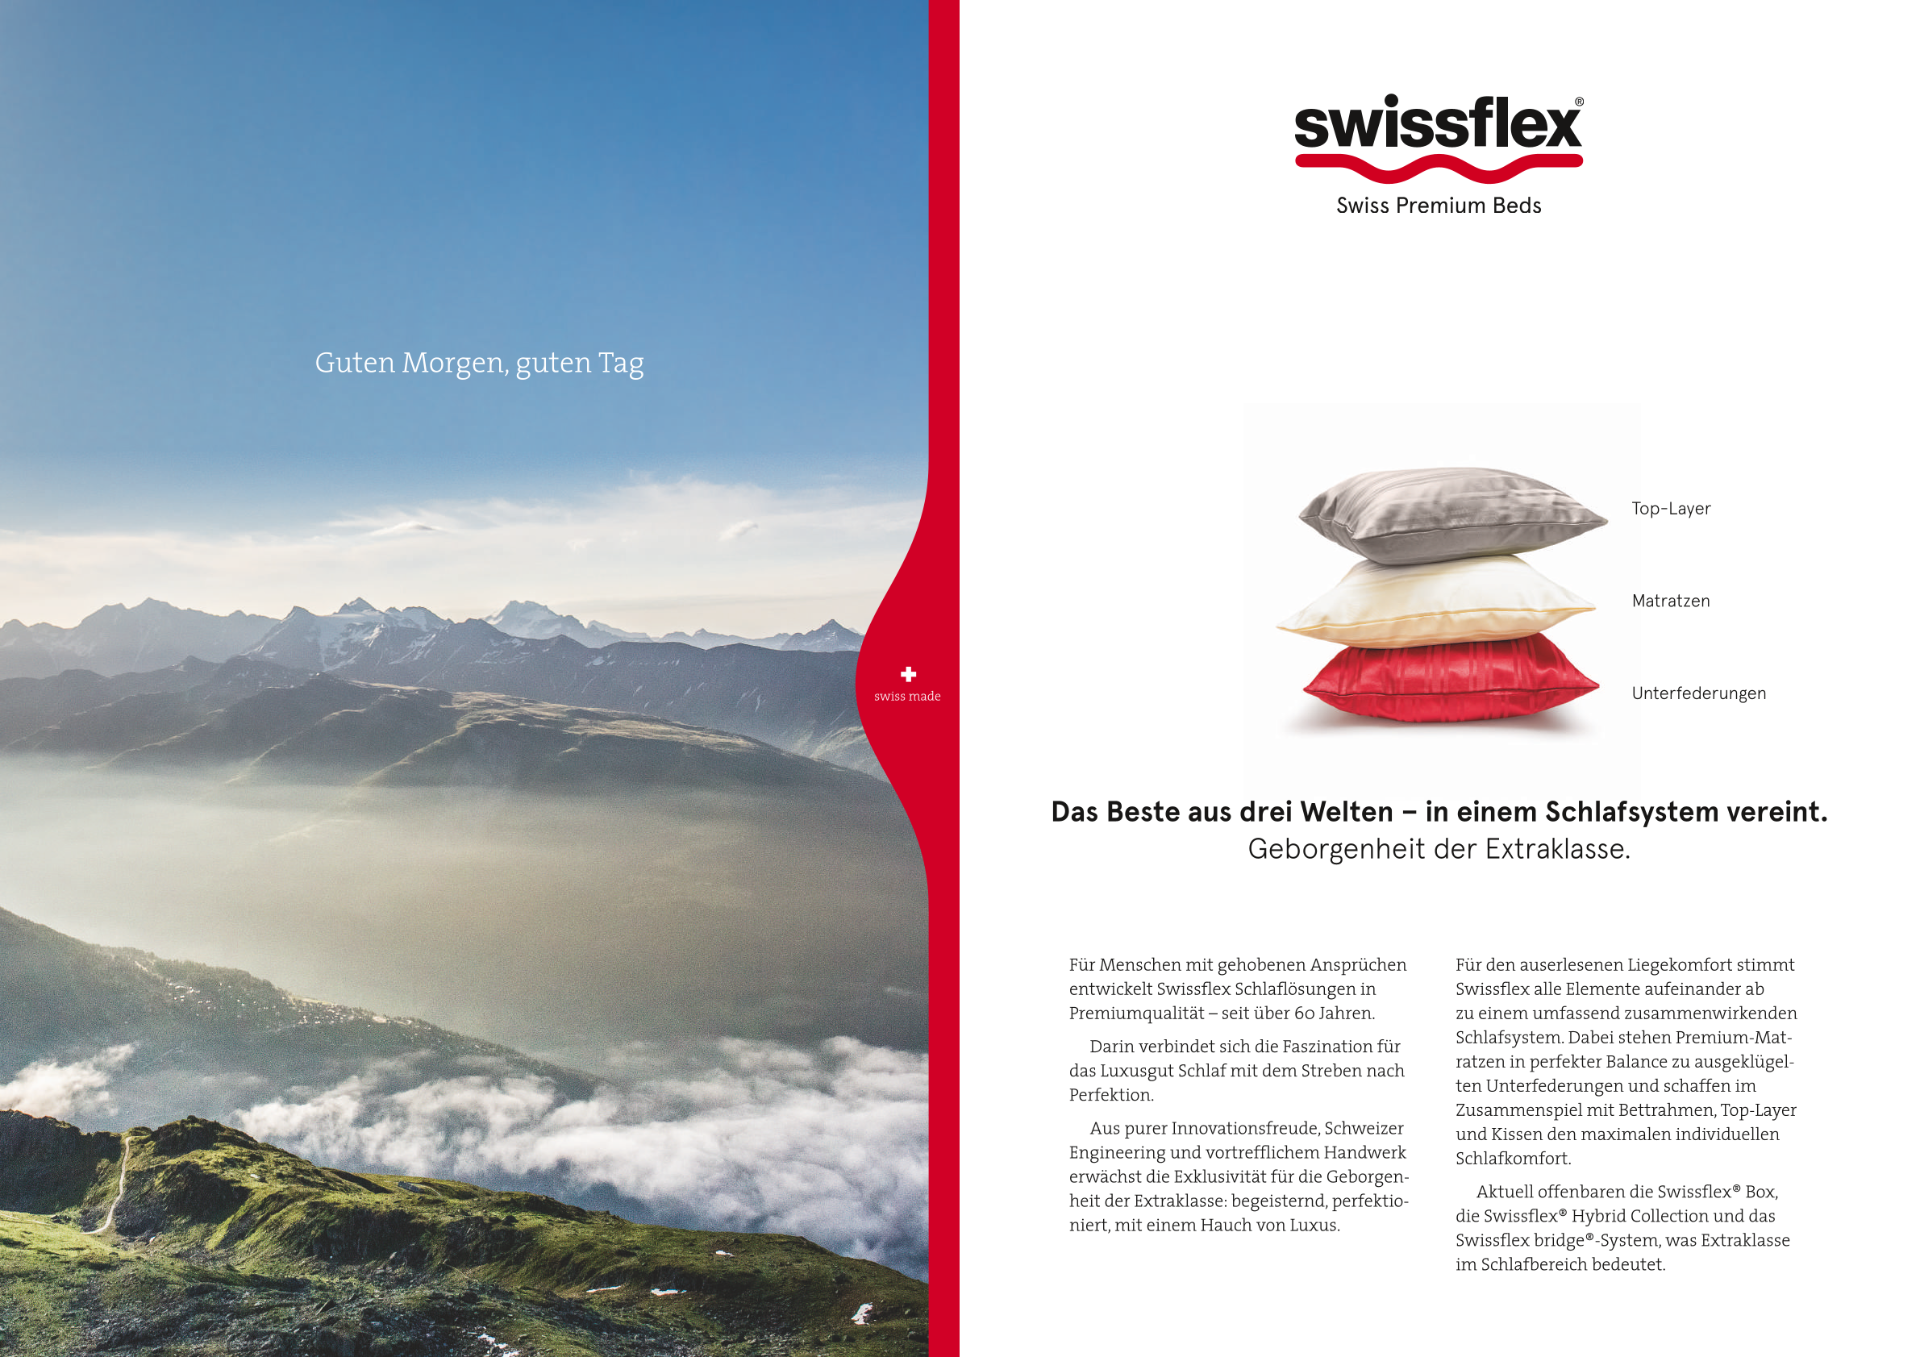 Swissflex® Hybrid Collection